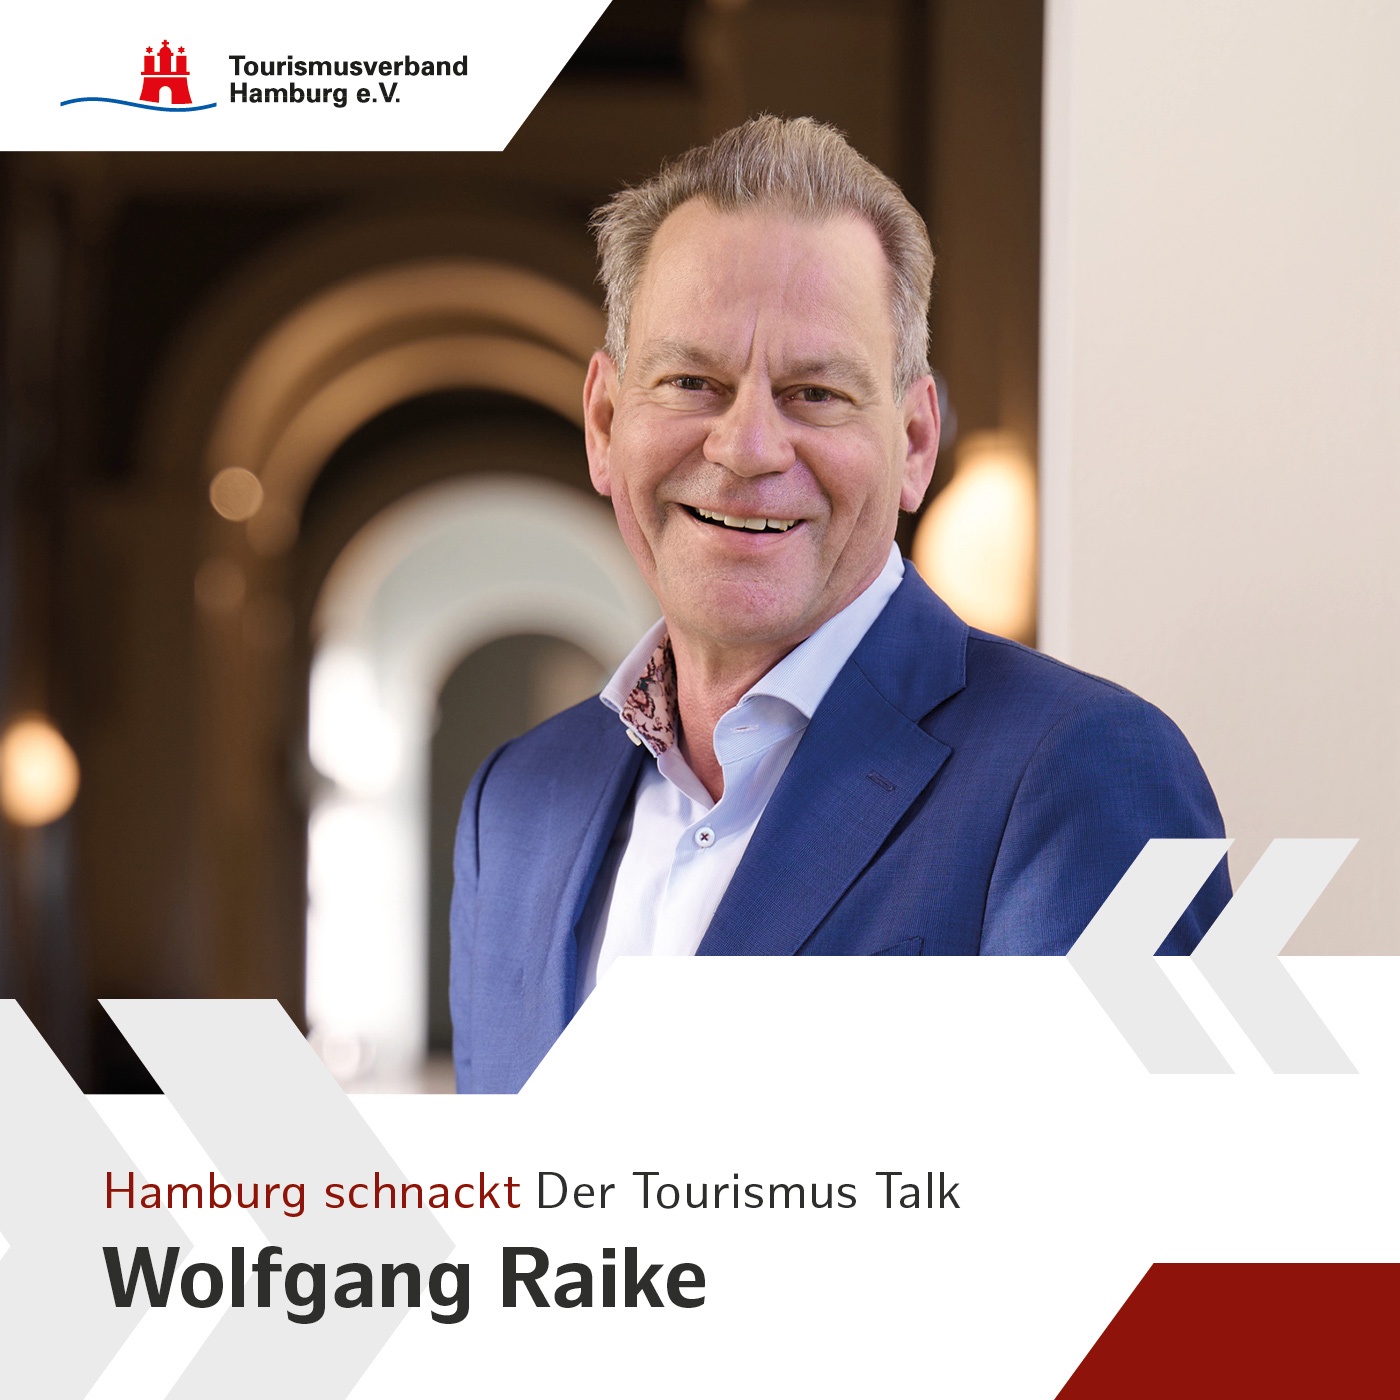 Hamburg schnackt - mit Wolfgang Raike, Vorstandsvorsitzender des Tourismusverbandes Hamburg